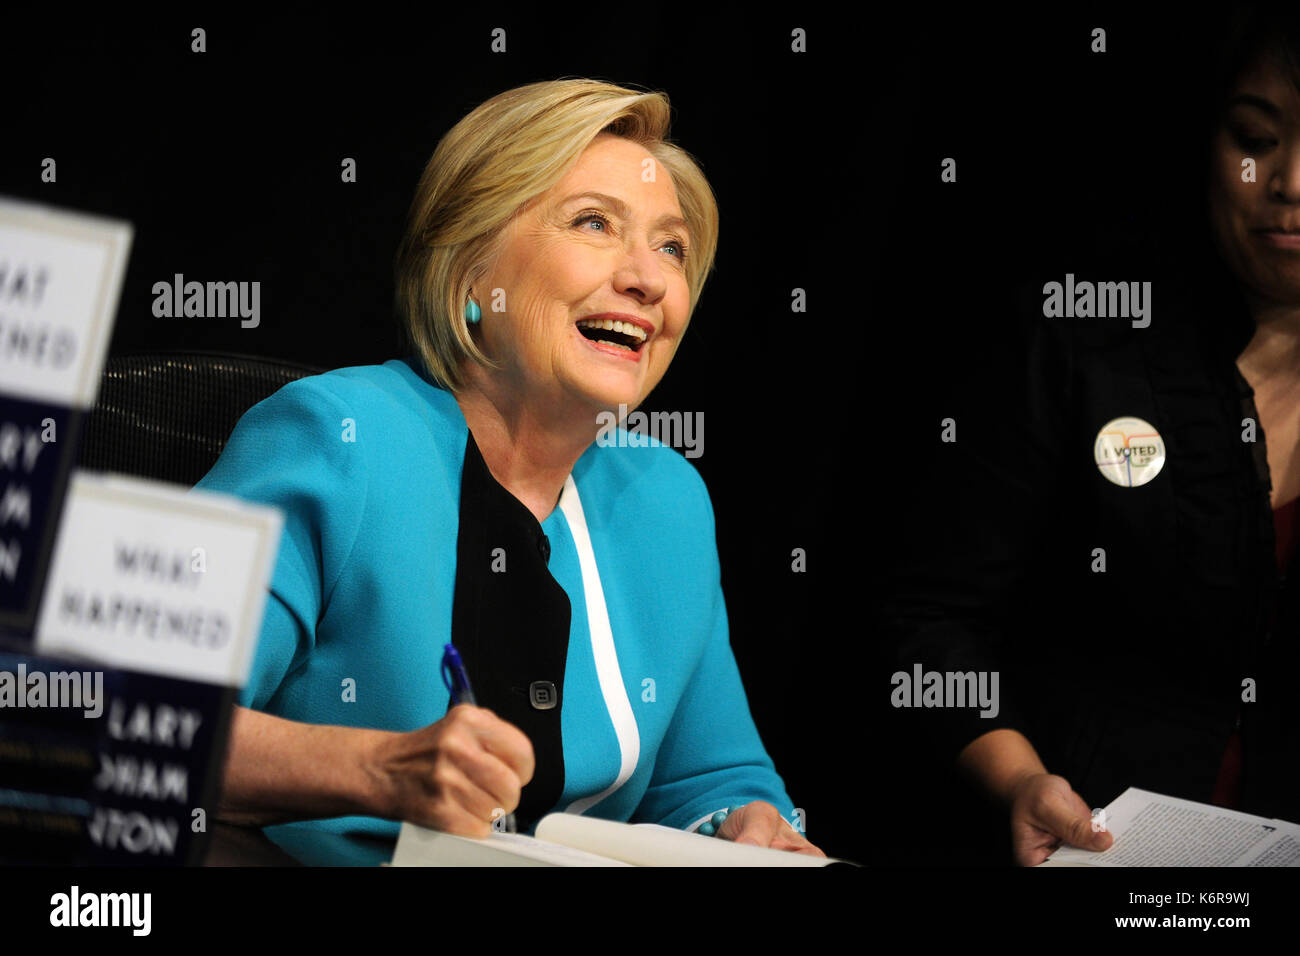 Nueva York, EE.UU. 12 de septiembre de 2017. Hillary Clinton firma copias de su libro, "What Say" en Barnes & Noble Union Square el 12 de septiembre de 2017 en la ciudad de Nueva York. Crédito: Geisler-Fotopress/Alamy Live News Foto de stock